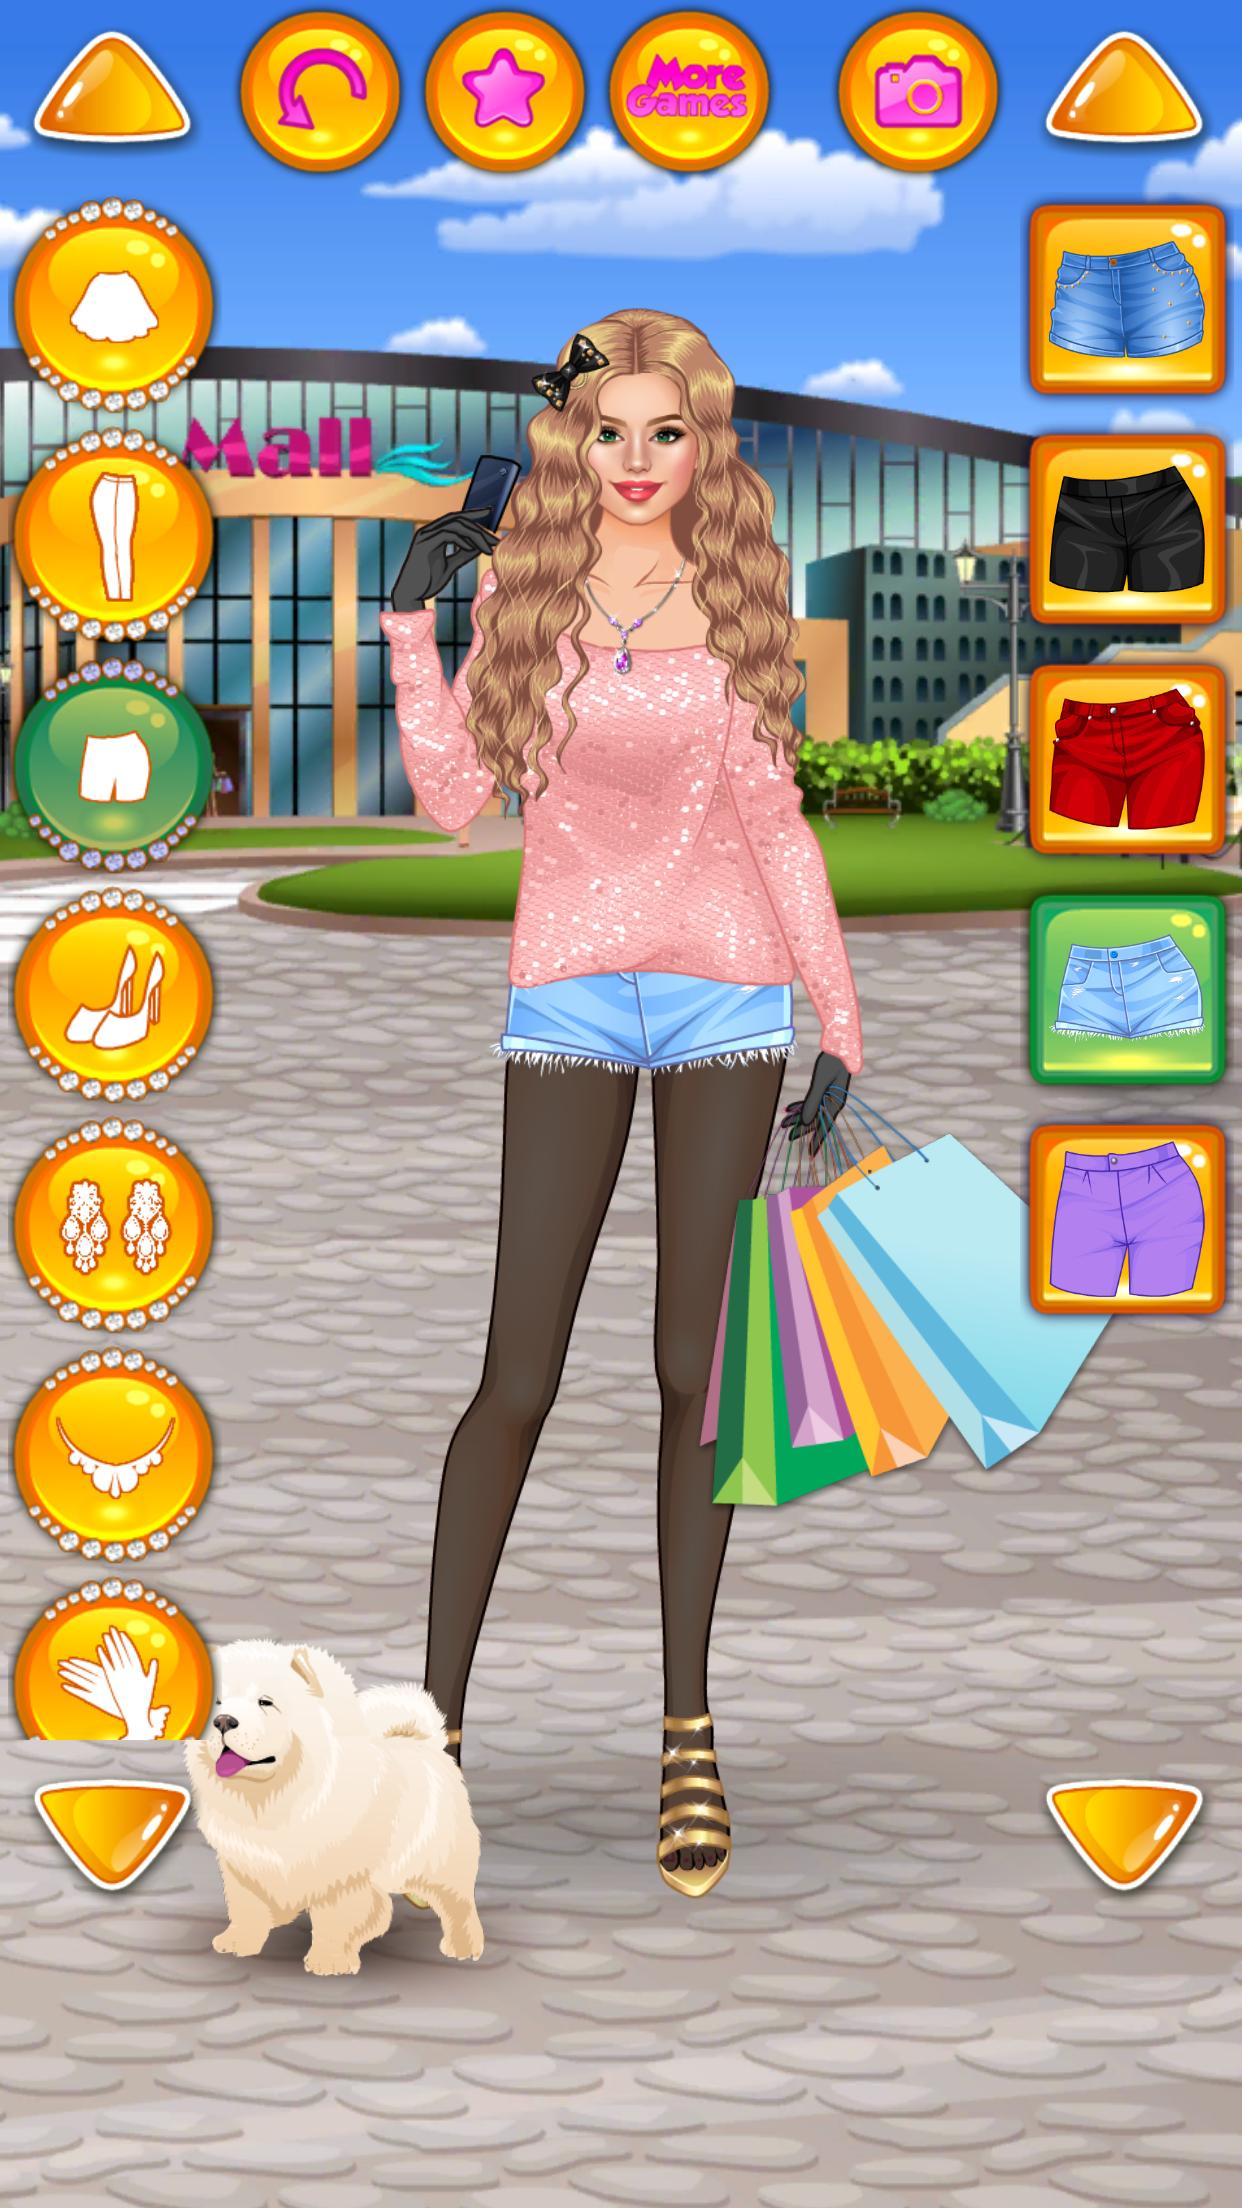 Rich Girl Crazy Shopping - Fashion Game 1.0.7 Screenshot 19